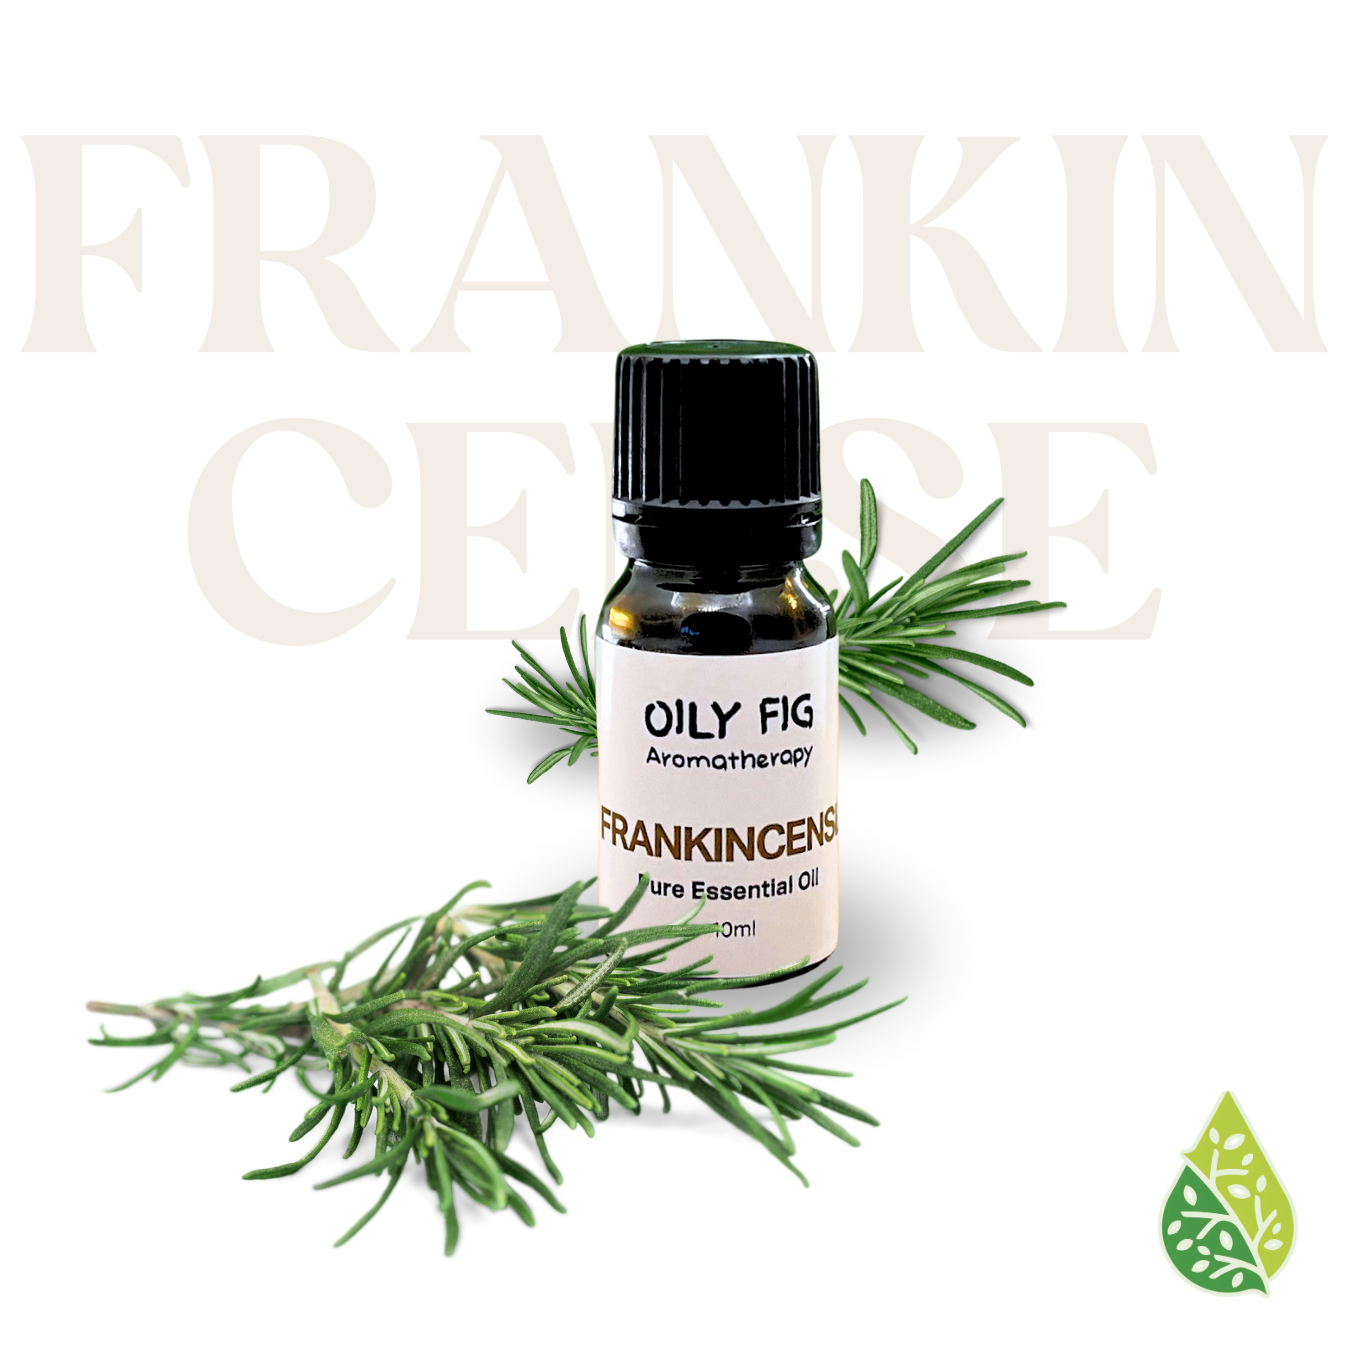 PURE Frankincense essential oil